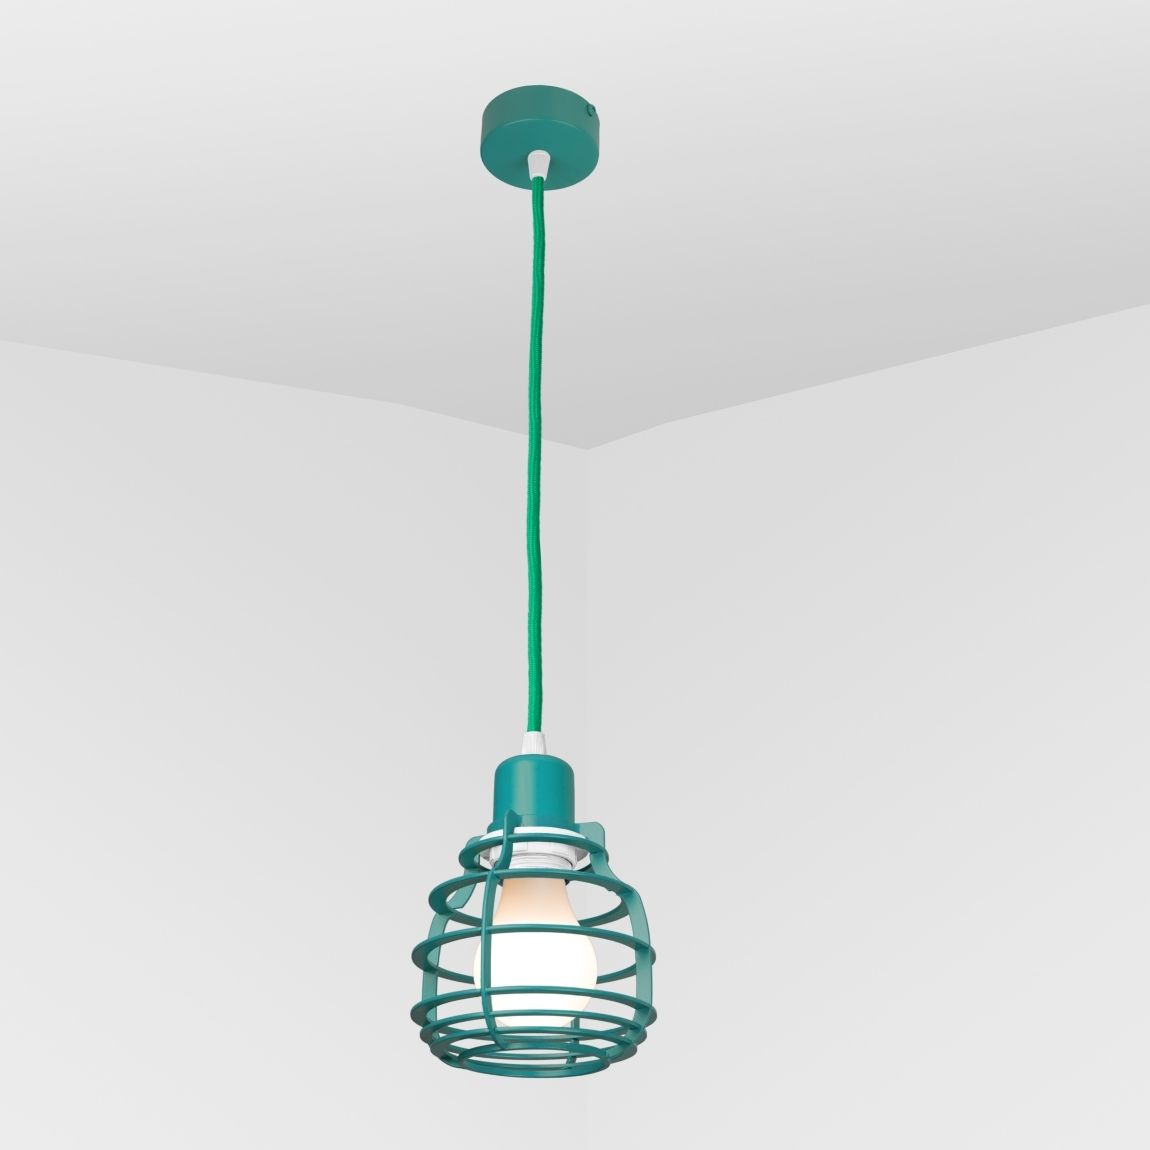 Suspension lamp Ara turquoise